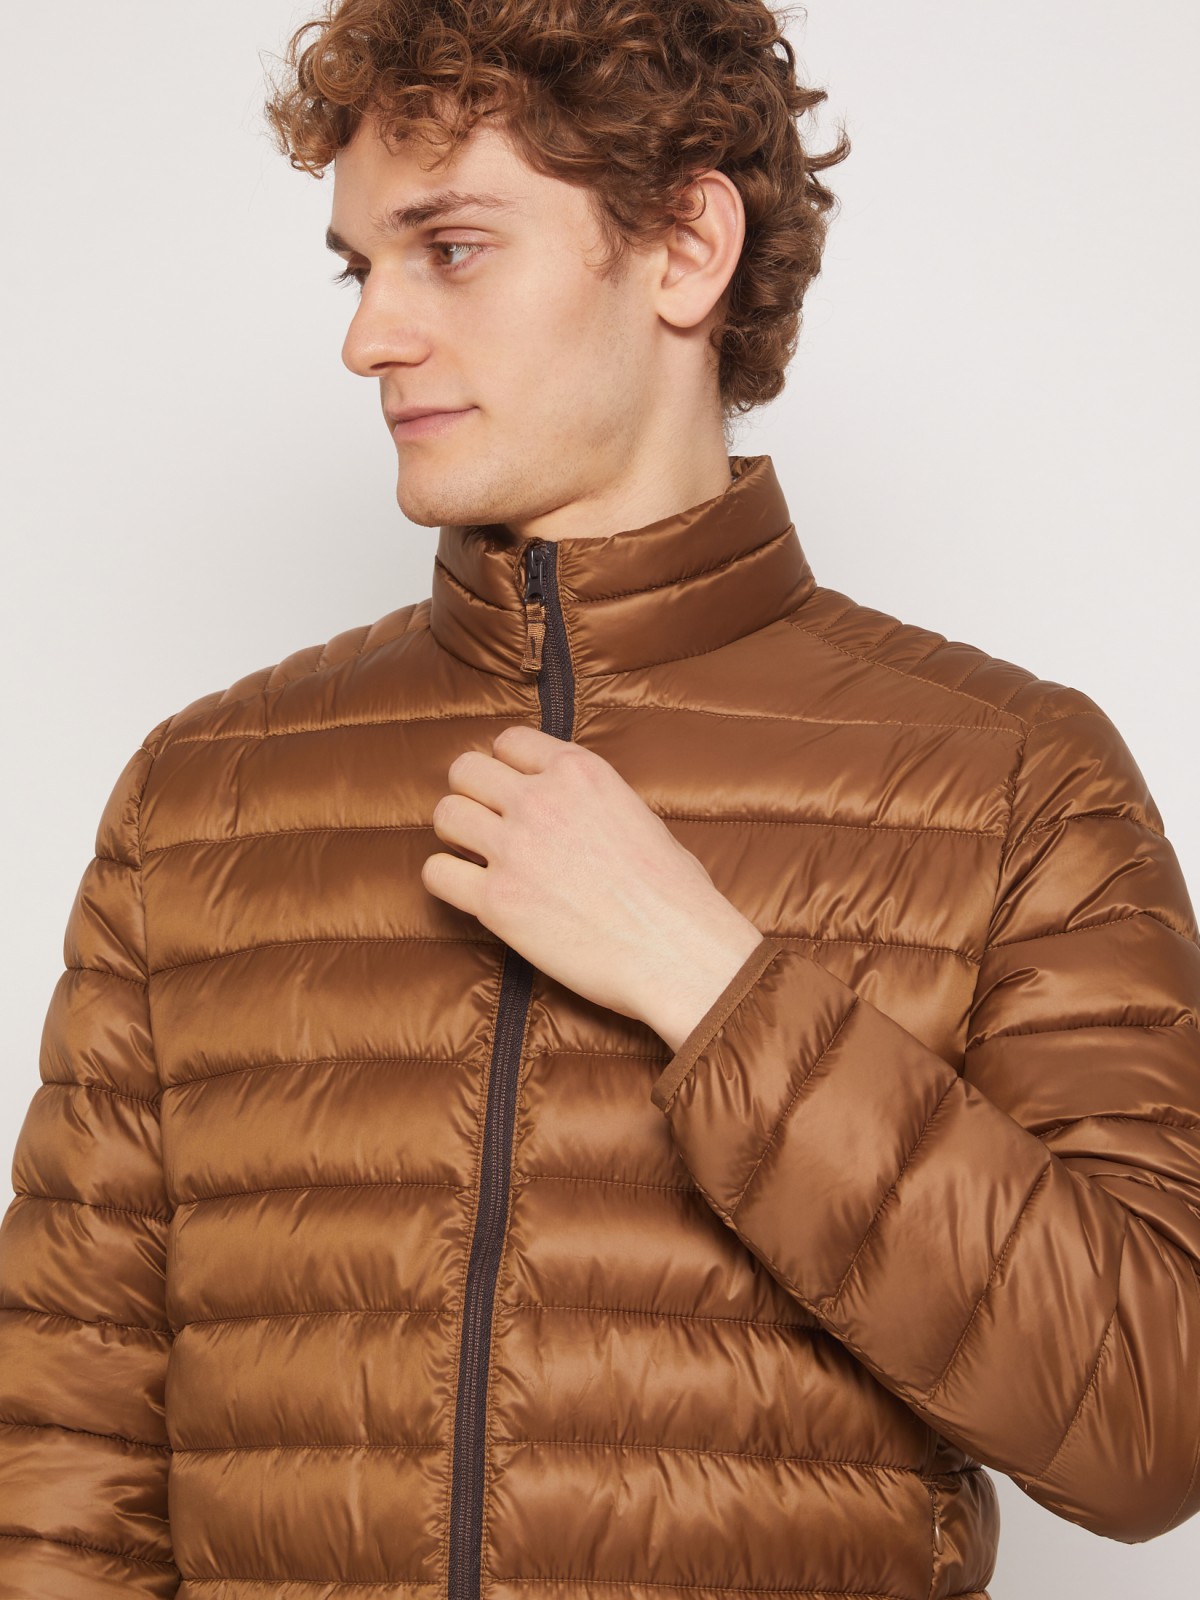 Ультралёгкая стёганая куртка с воротником-стойкой zolla 011335102214, цвет горчичный, размер S - фото 3